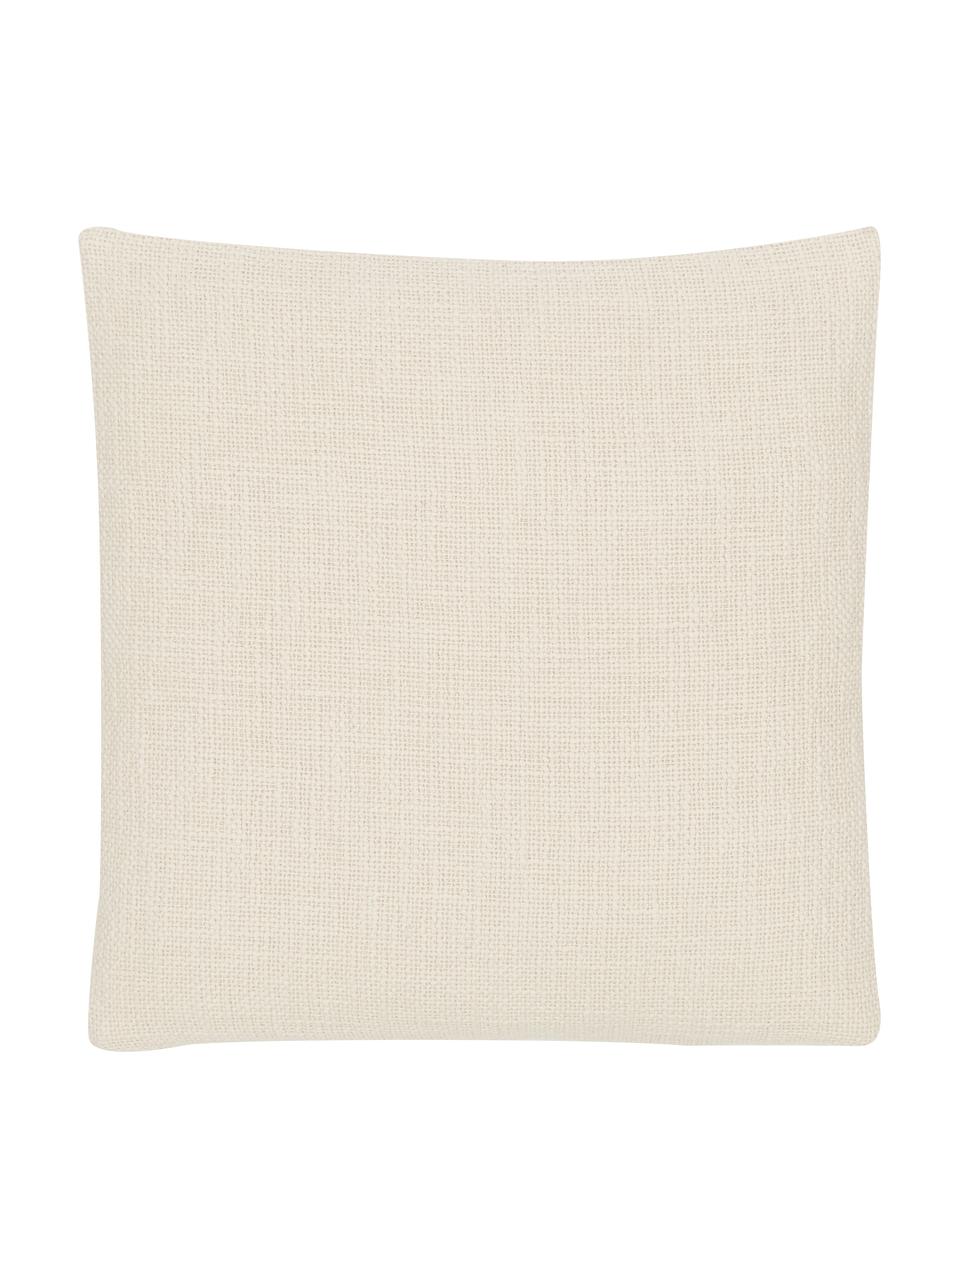 Poszewka na poduszkę Anise, 100% bawełna, Kremowobiały, S 45 x D 45 cm